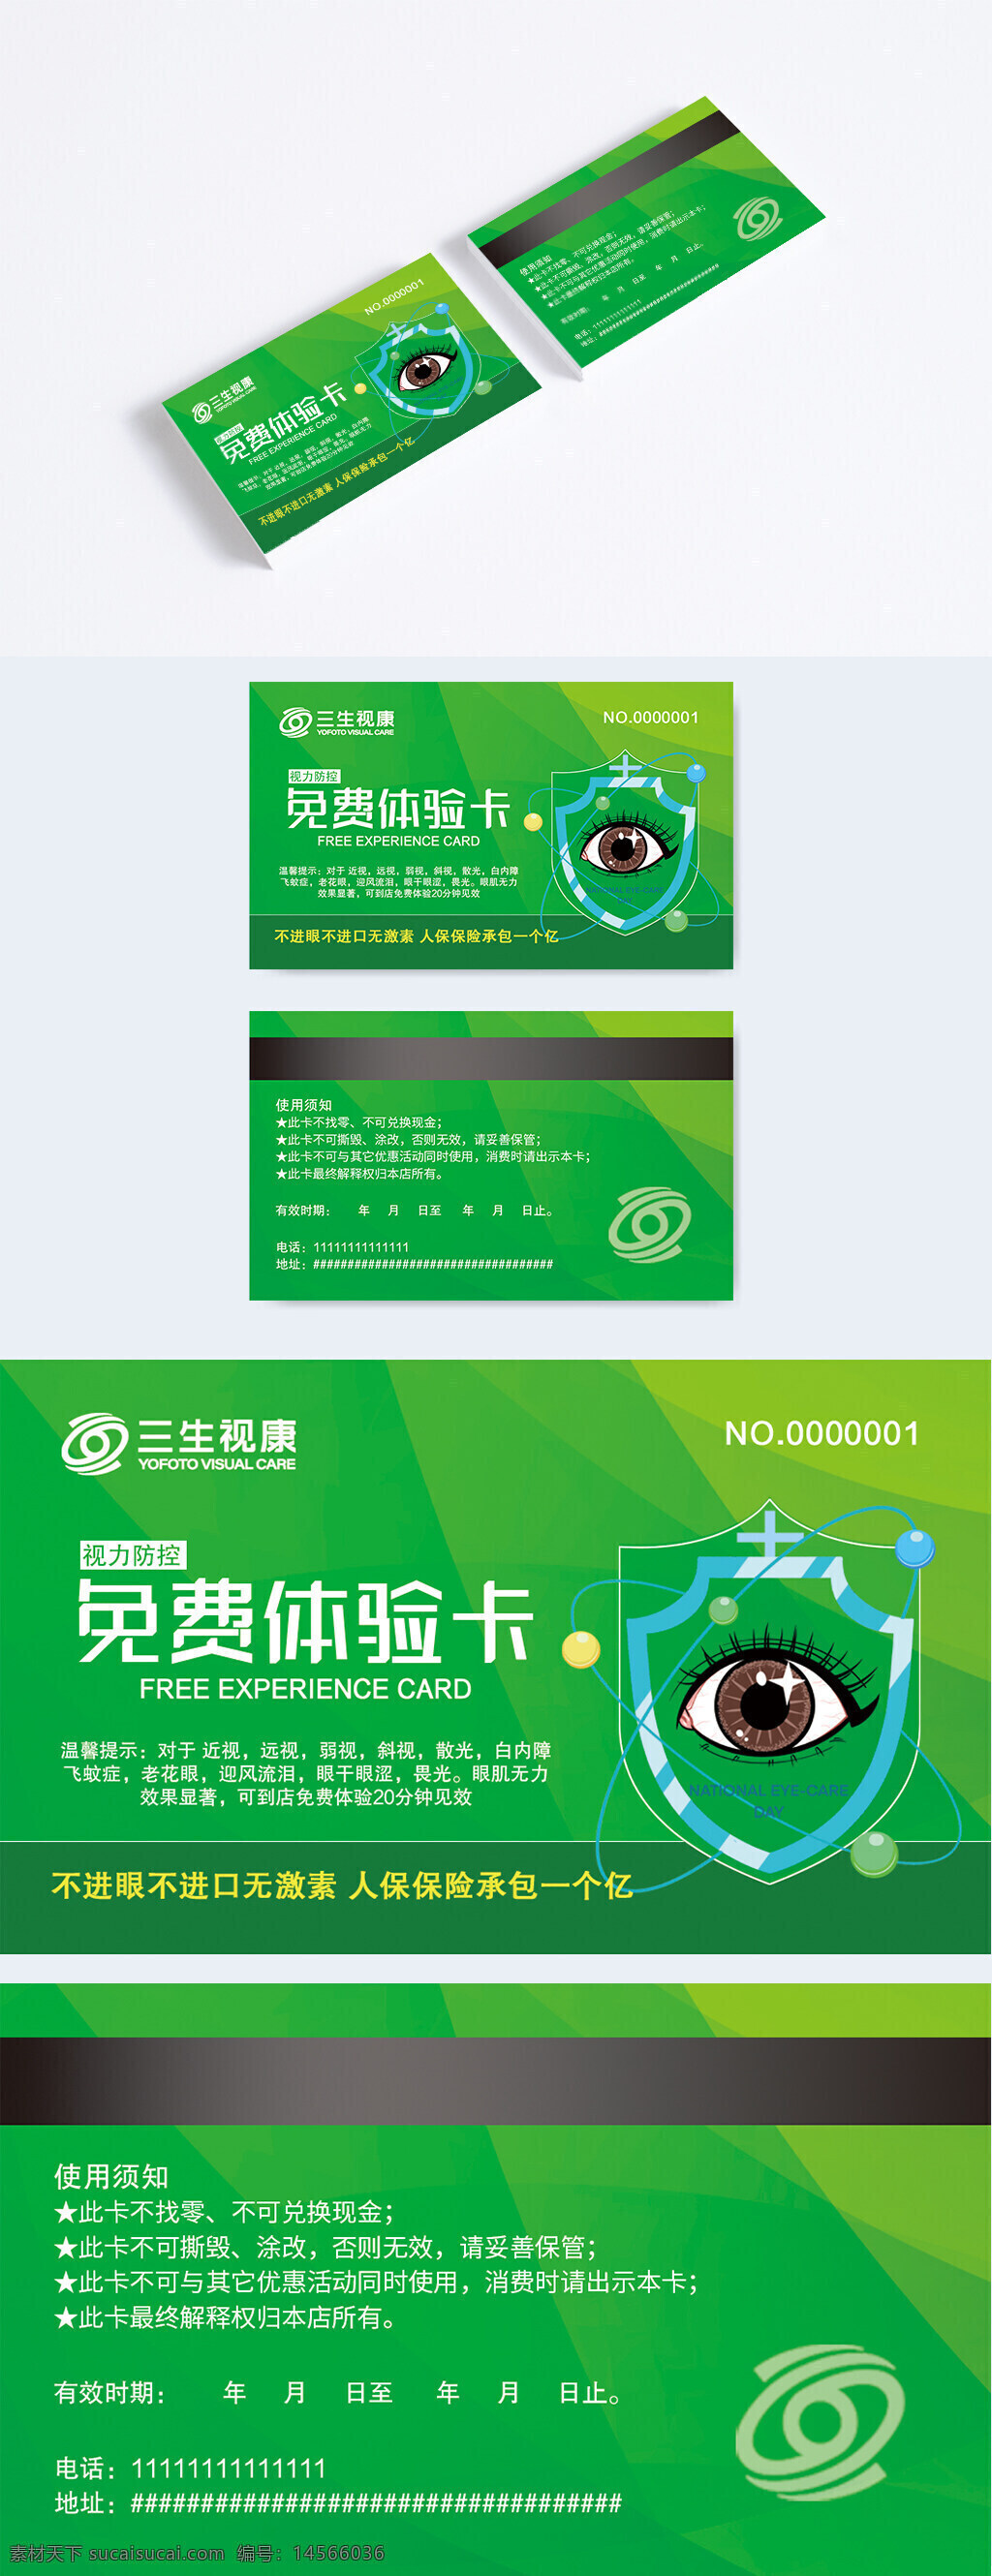 爱护眼睛 视力防控 体验卡 绿色会员卡 优惠卡券